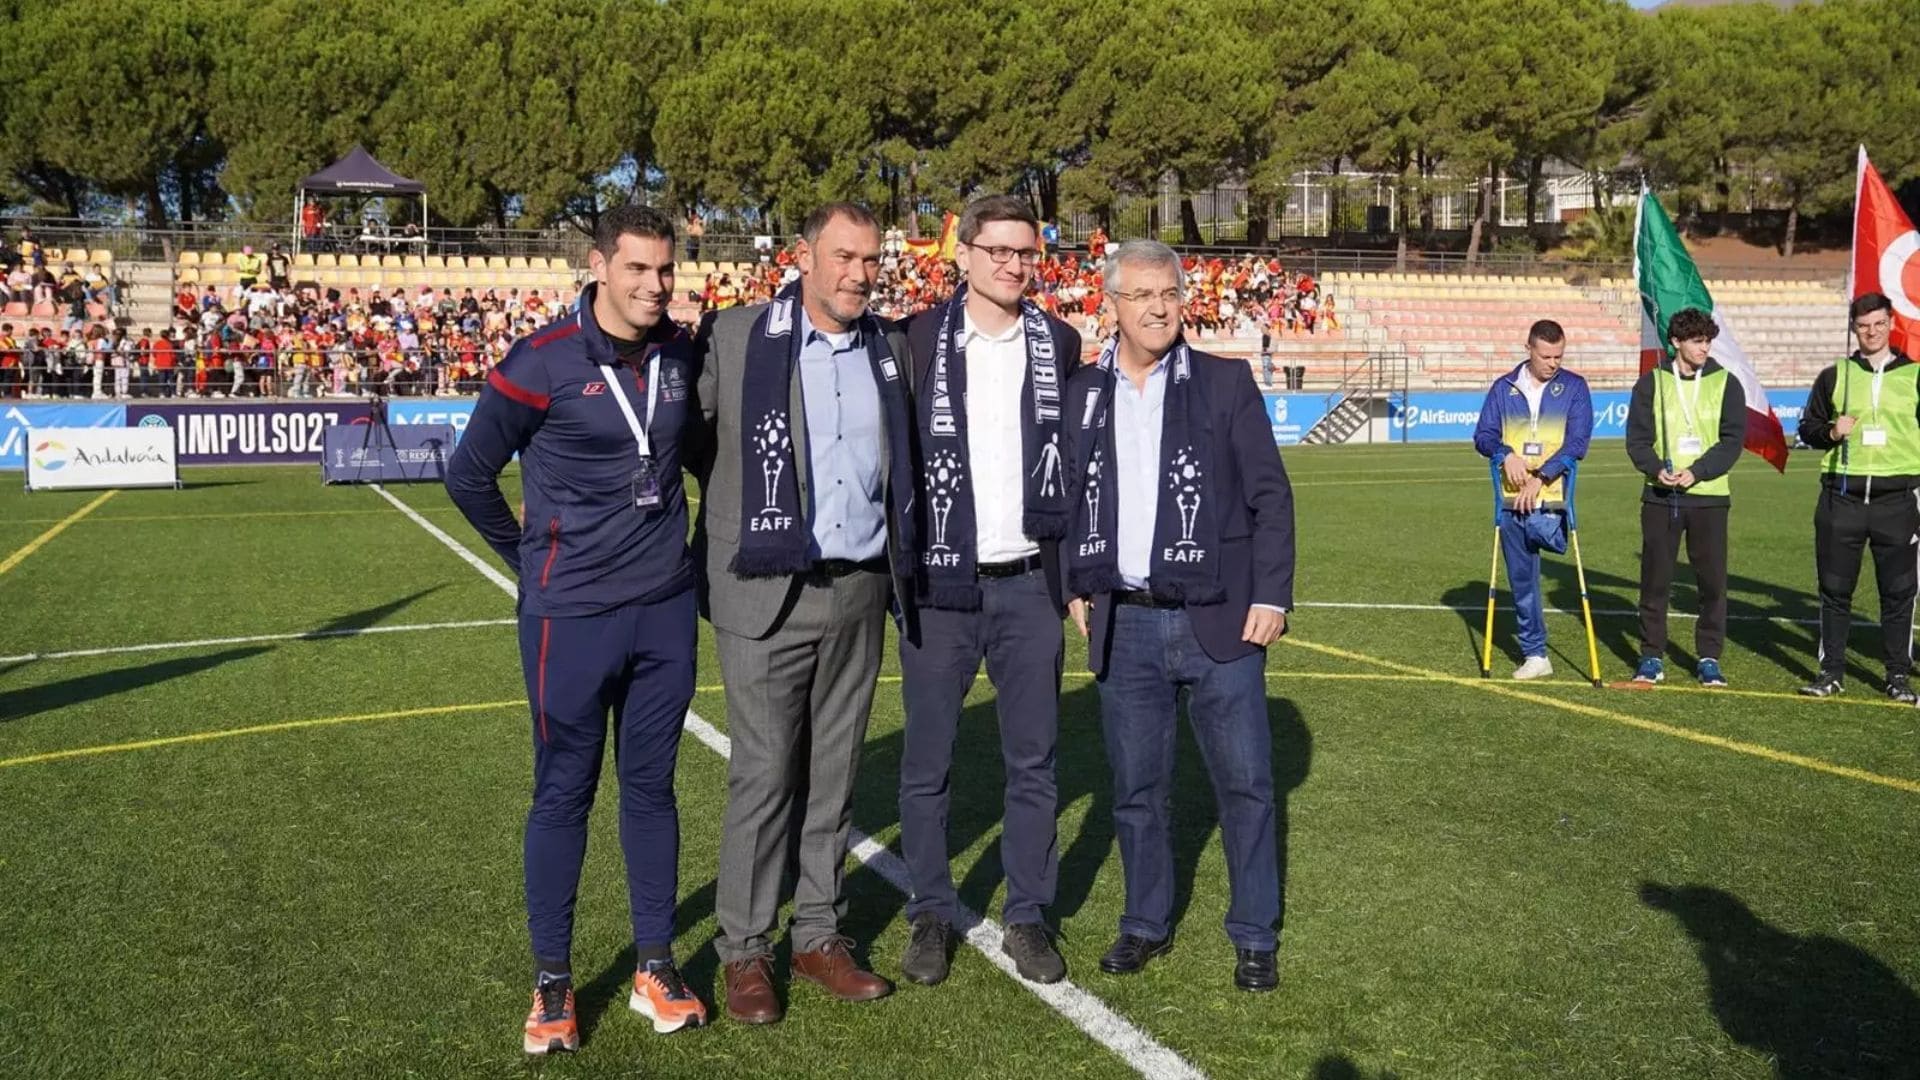 La Champions League de Fútbol Amputado se da cita por primera vez en España